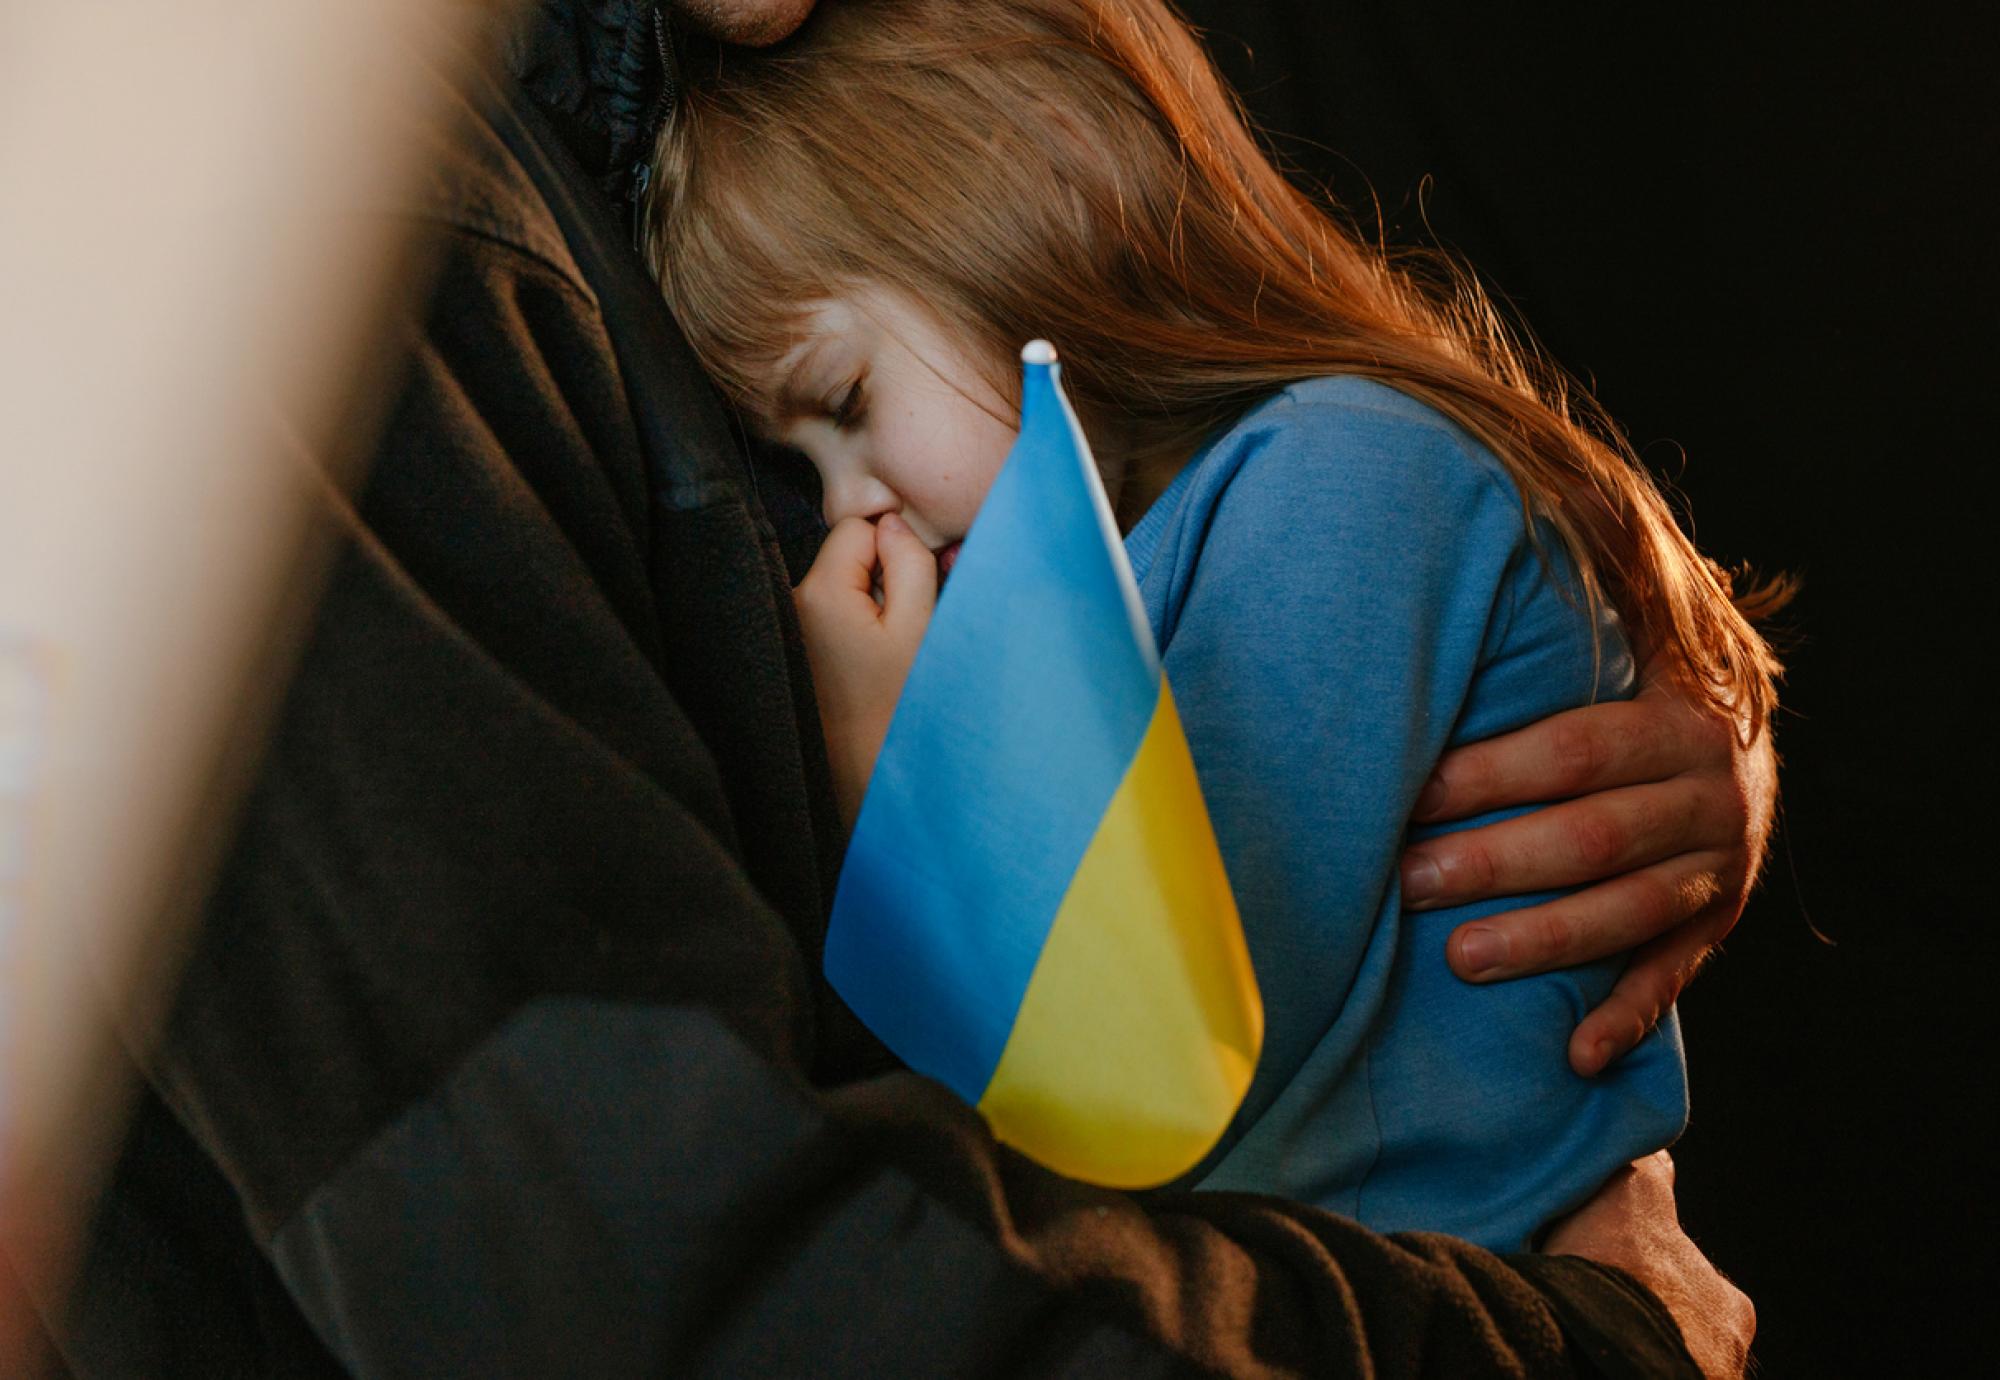 A Ukrainian refugee child with a Ukraine flag